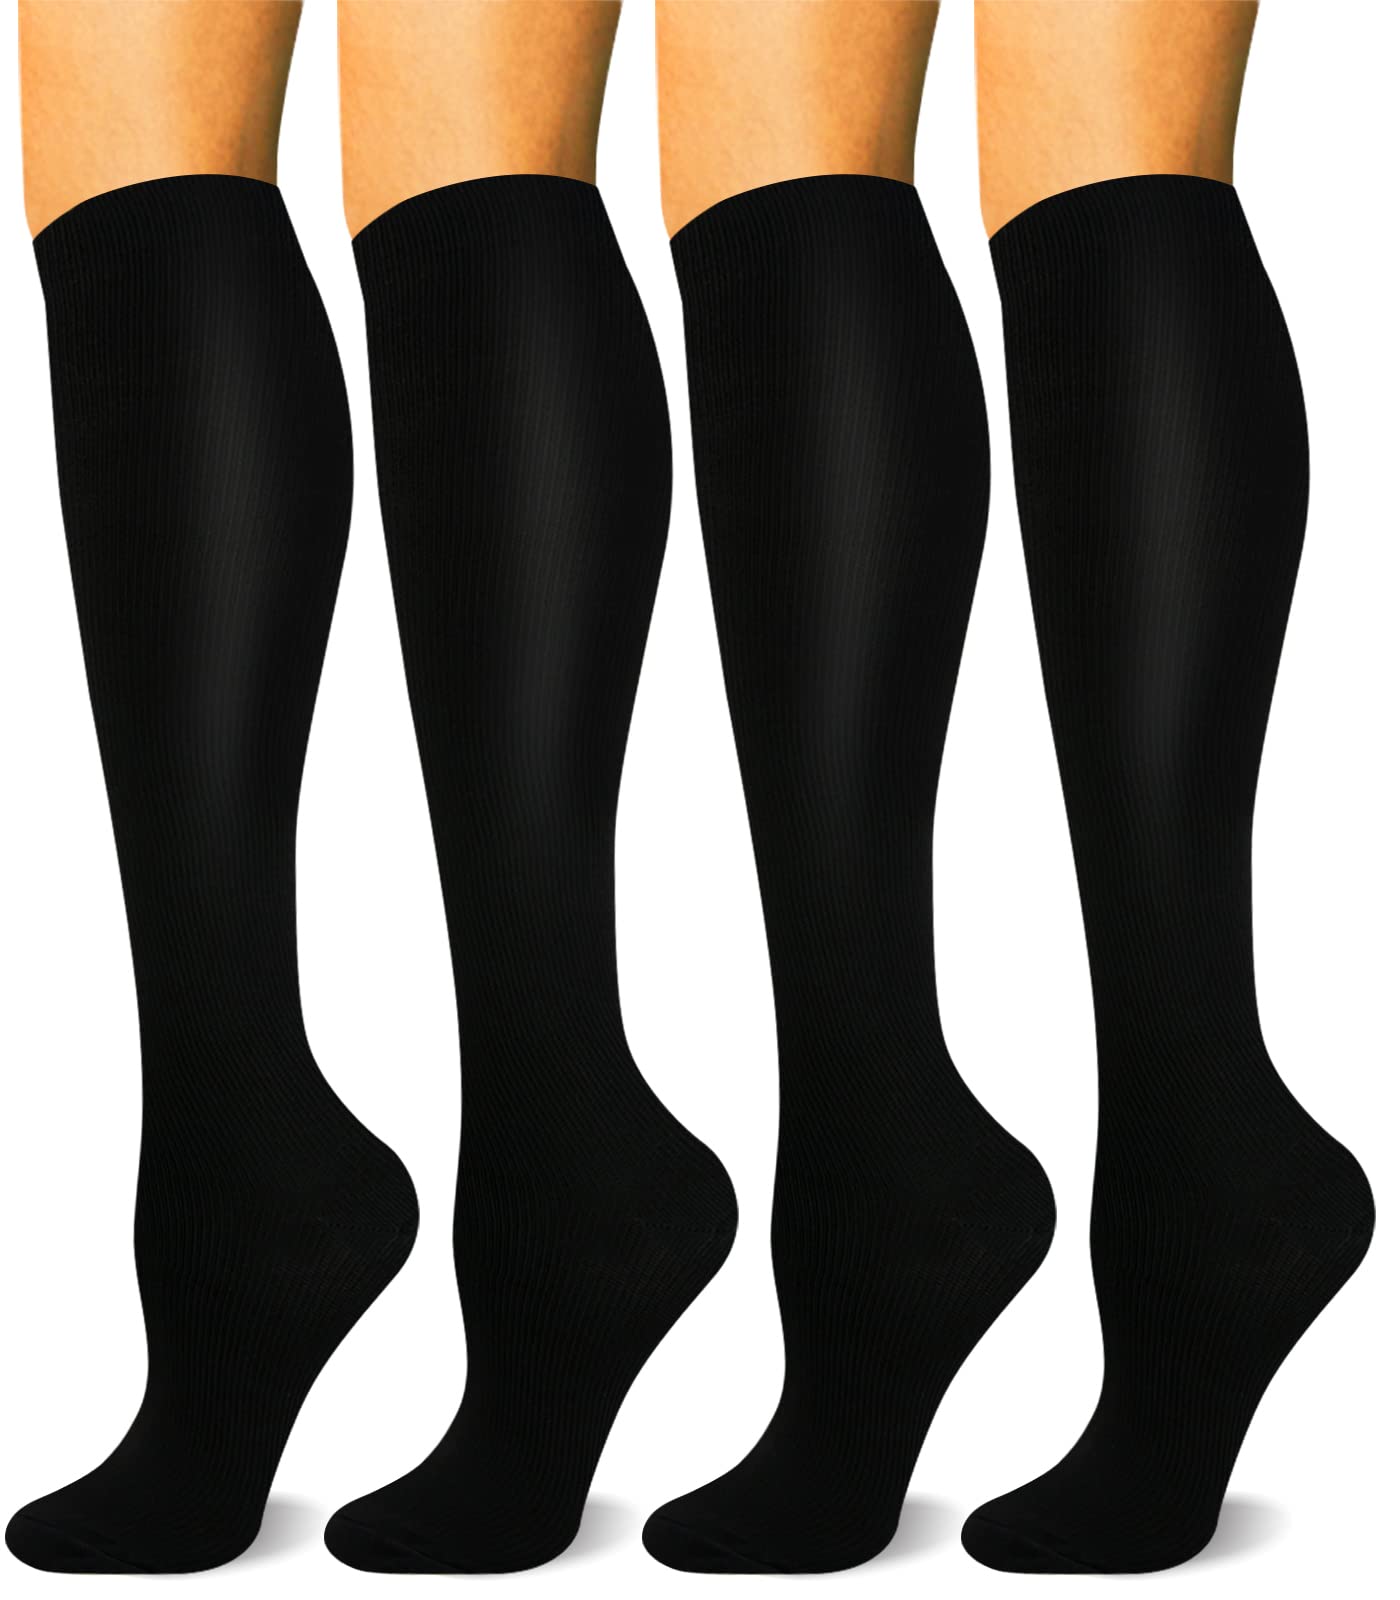 HLTPRO 4 Pairs Compression Socks for Women & Men - Best Support